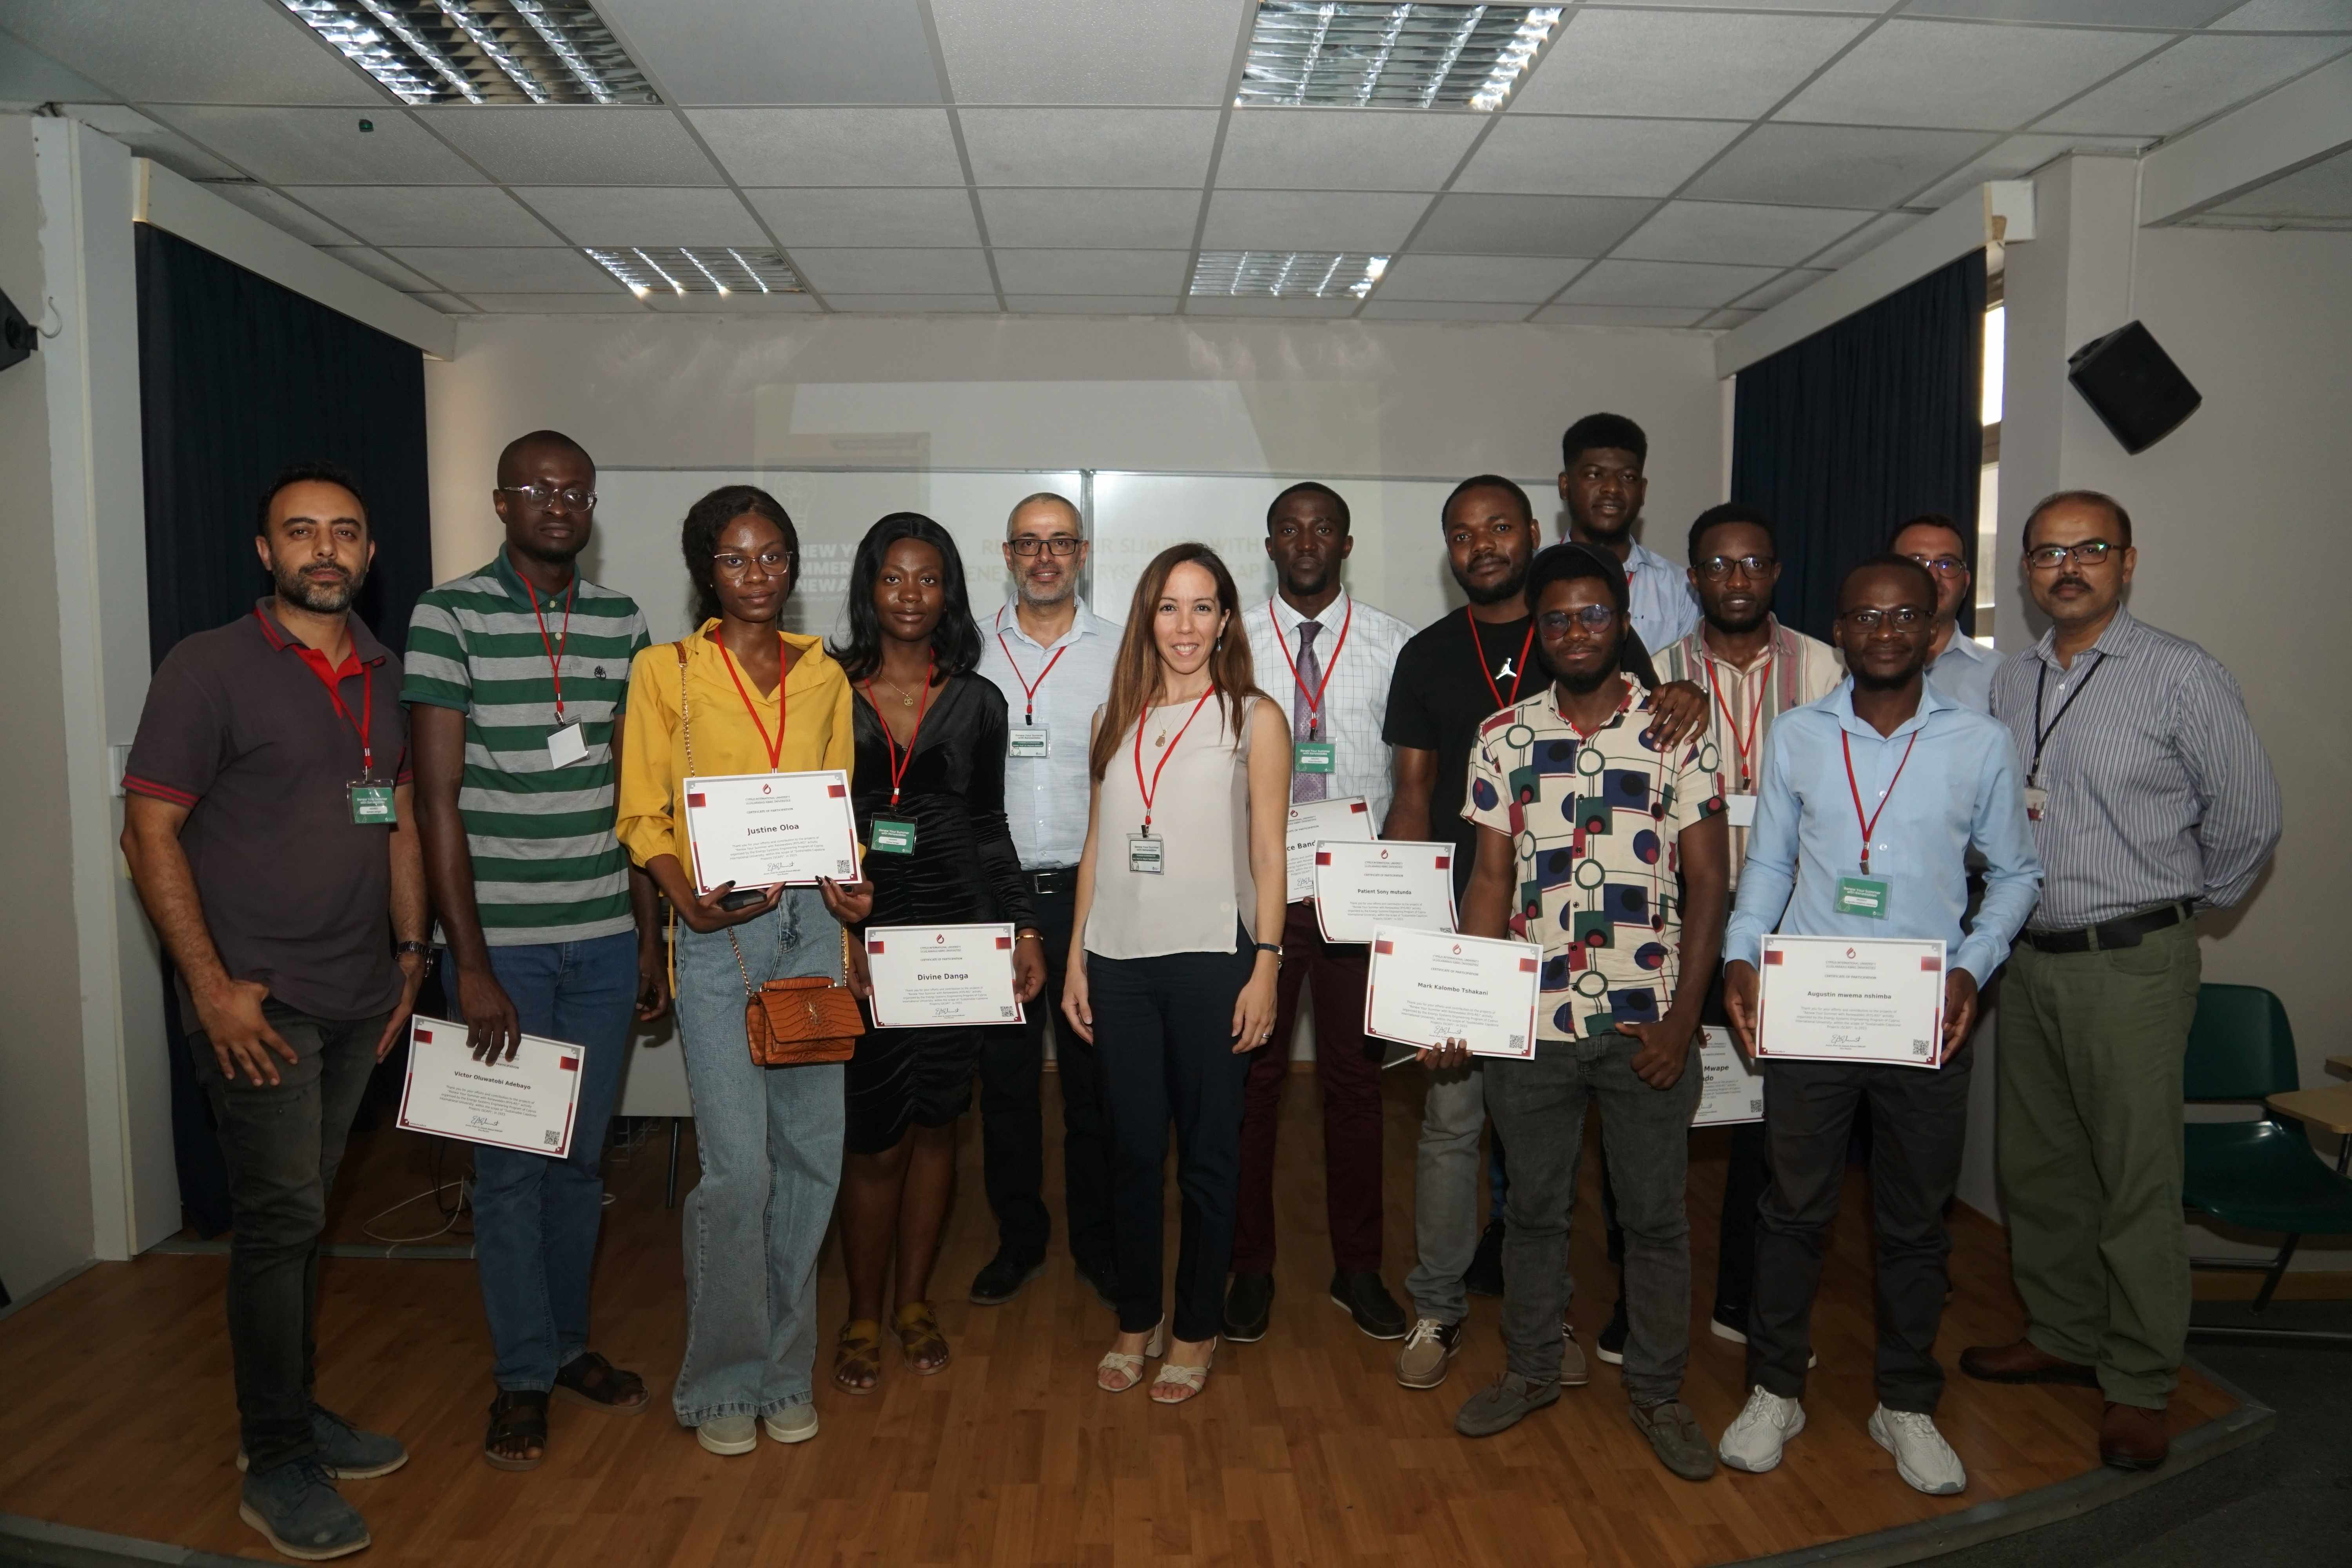 UKÜ “Yenilenebilir Enerji ile Yazını Yenile” aktivitesine katılan öğrencilere sertifikaları verildi